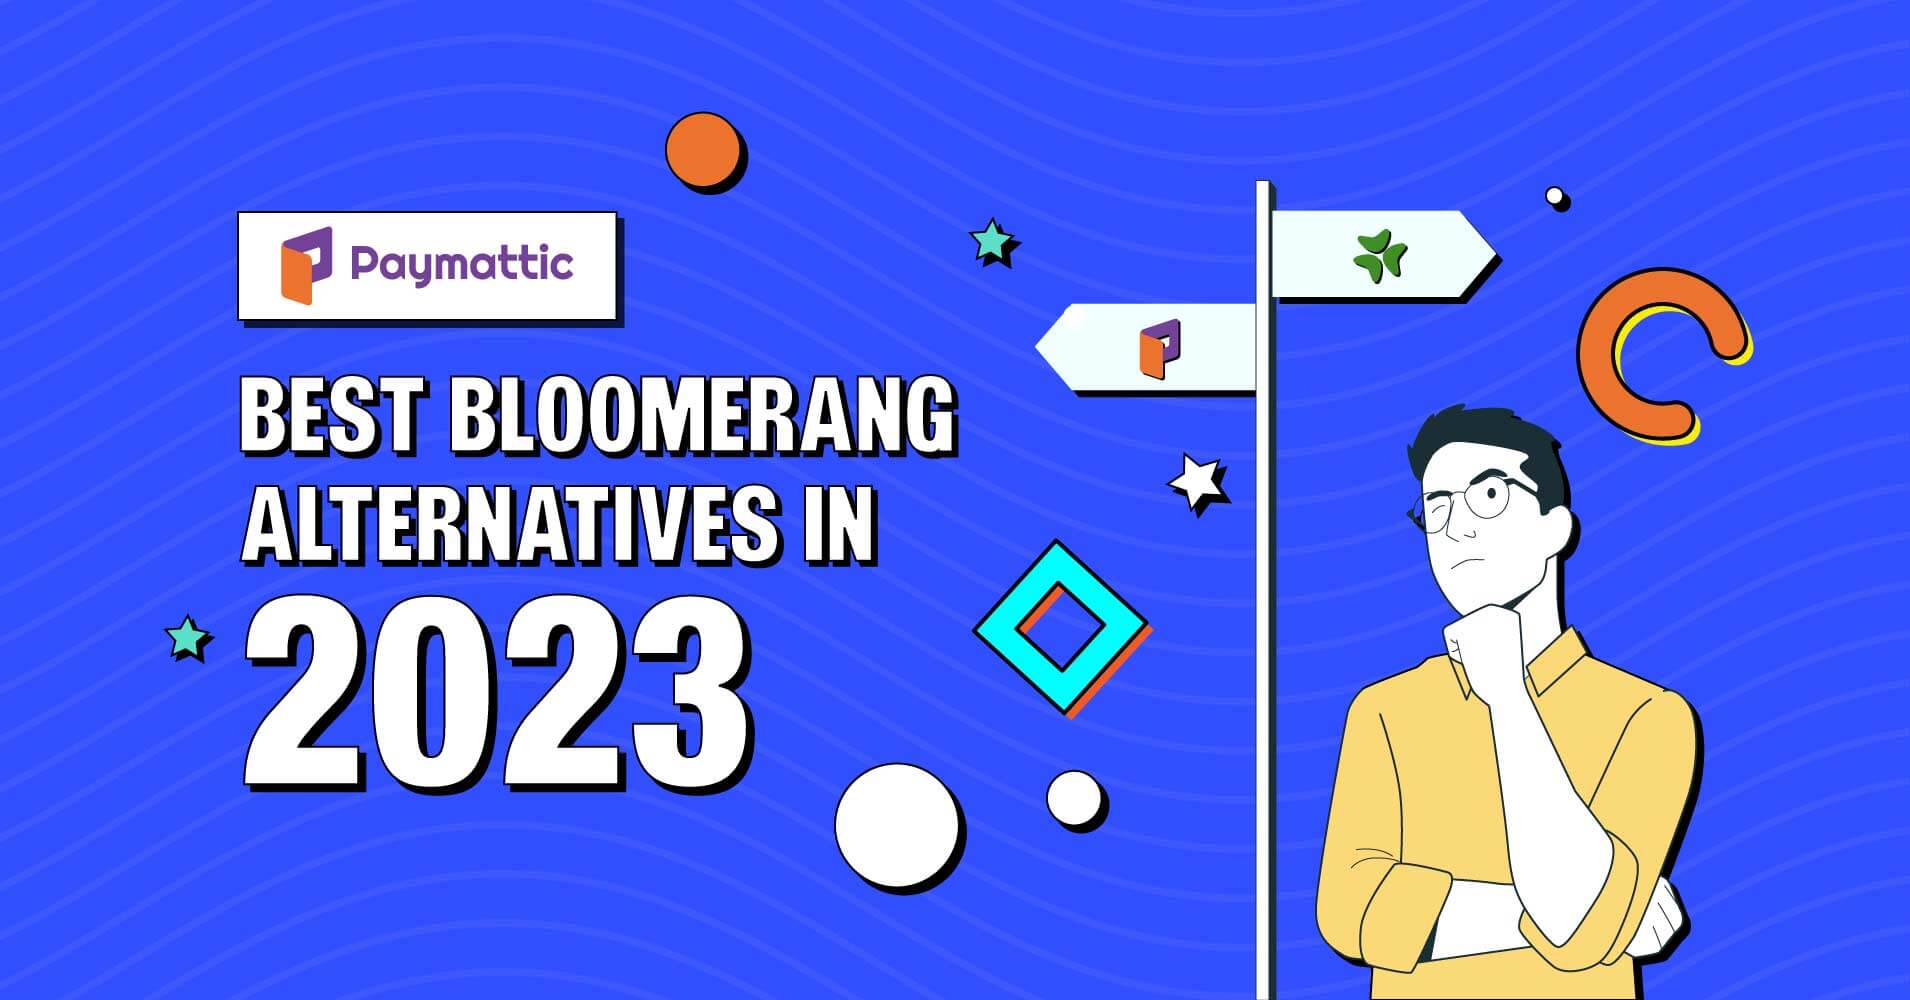 Bloomerang alternatives